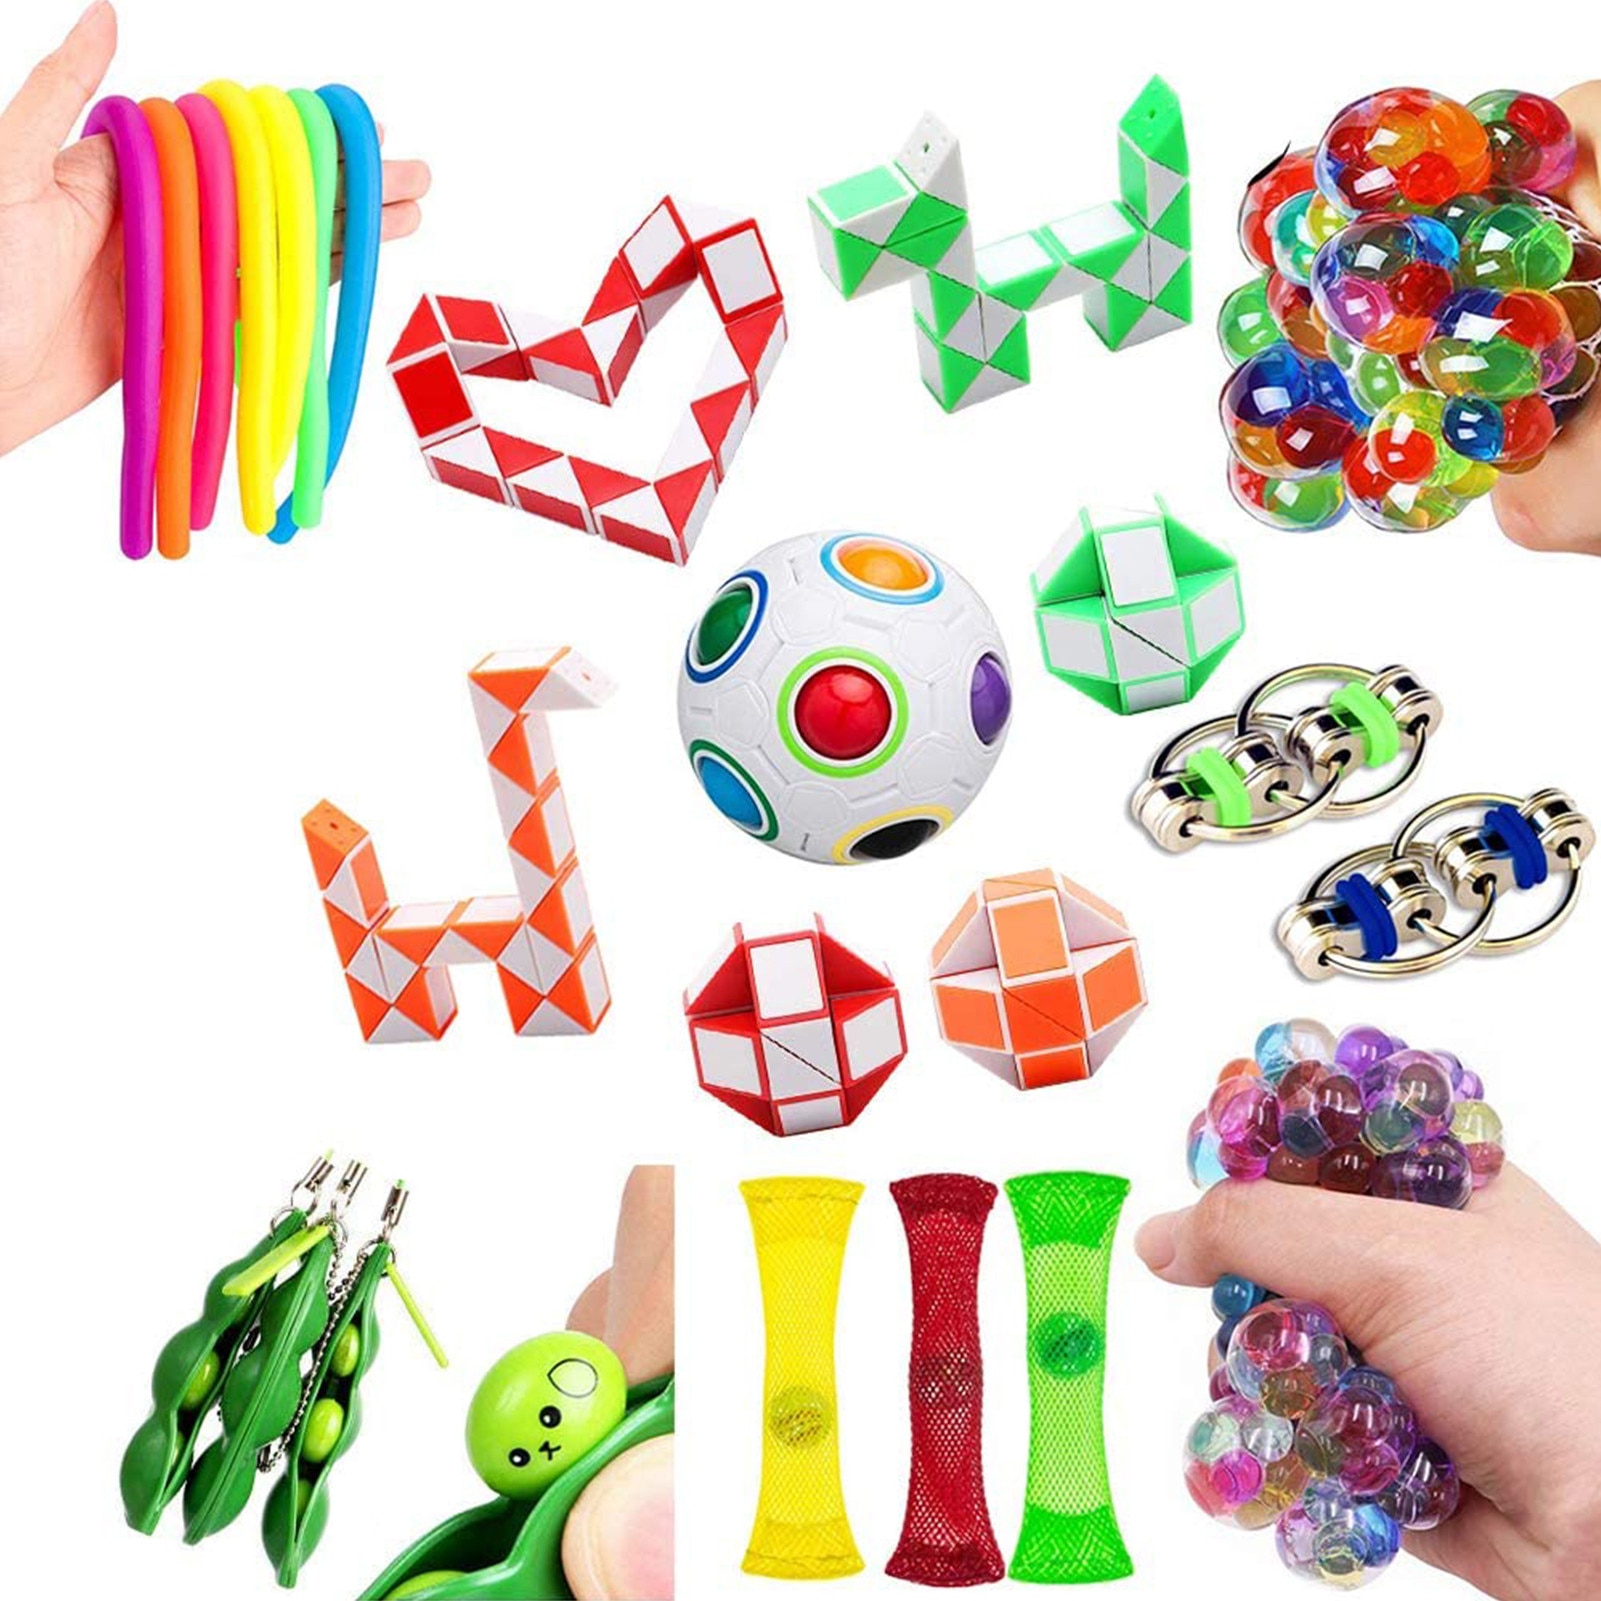 22 Pack Fidget Speelgoed Stress Relief Speelgoed Autisme Angst Relief Stress Pop Bubble Fidget Zintuiglijke Decompressie Speelgoed Voor Kids Volwassenen